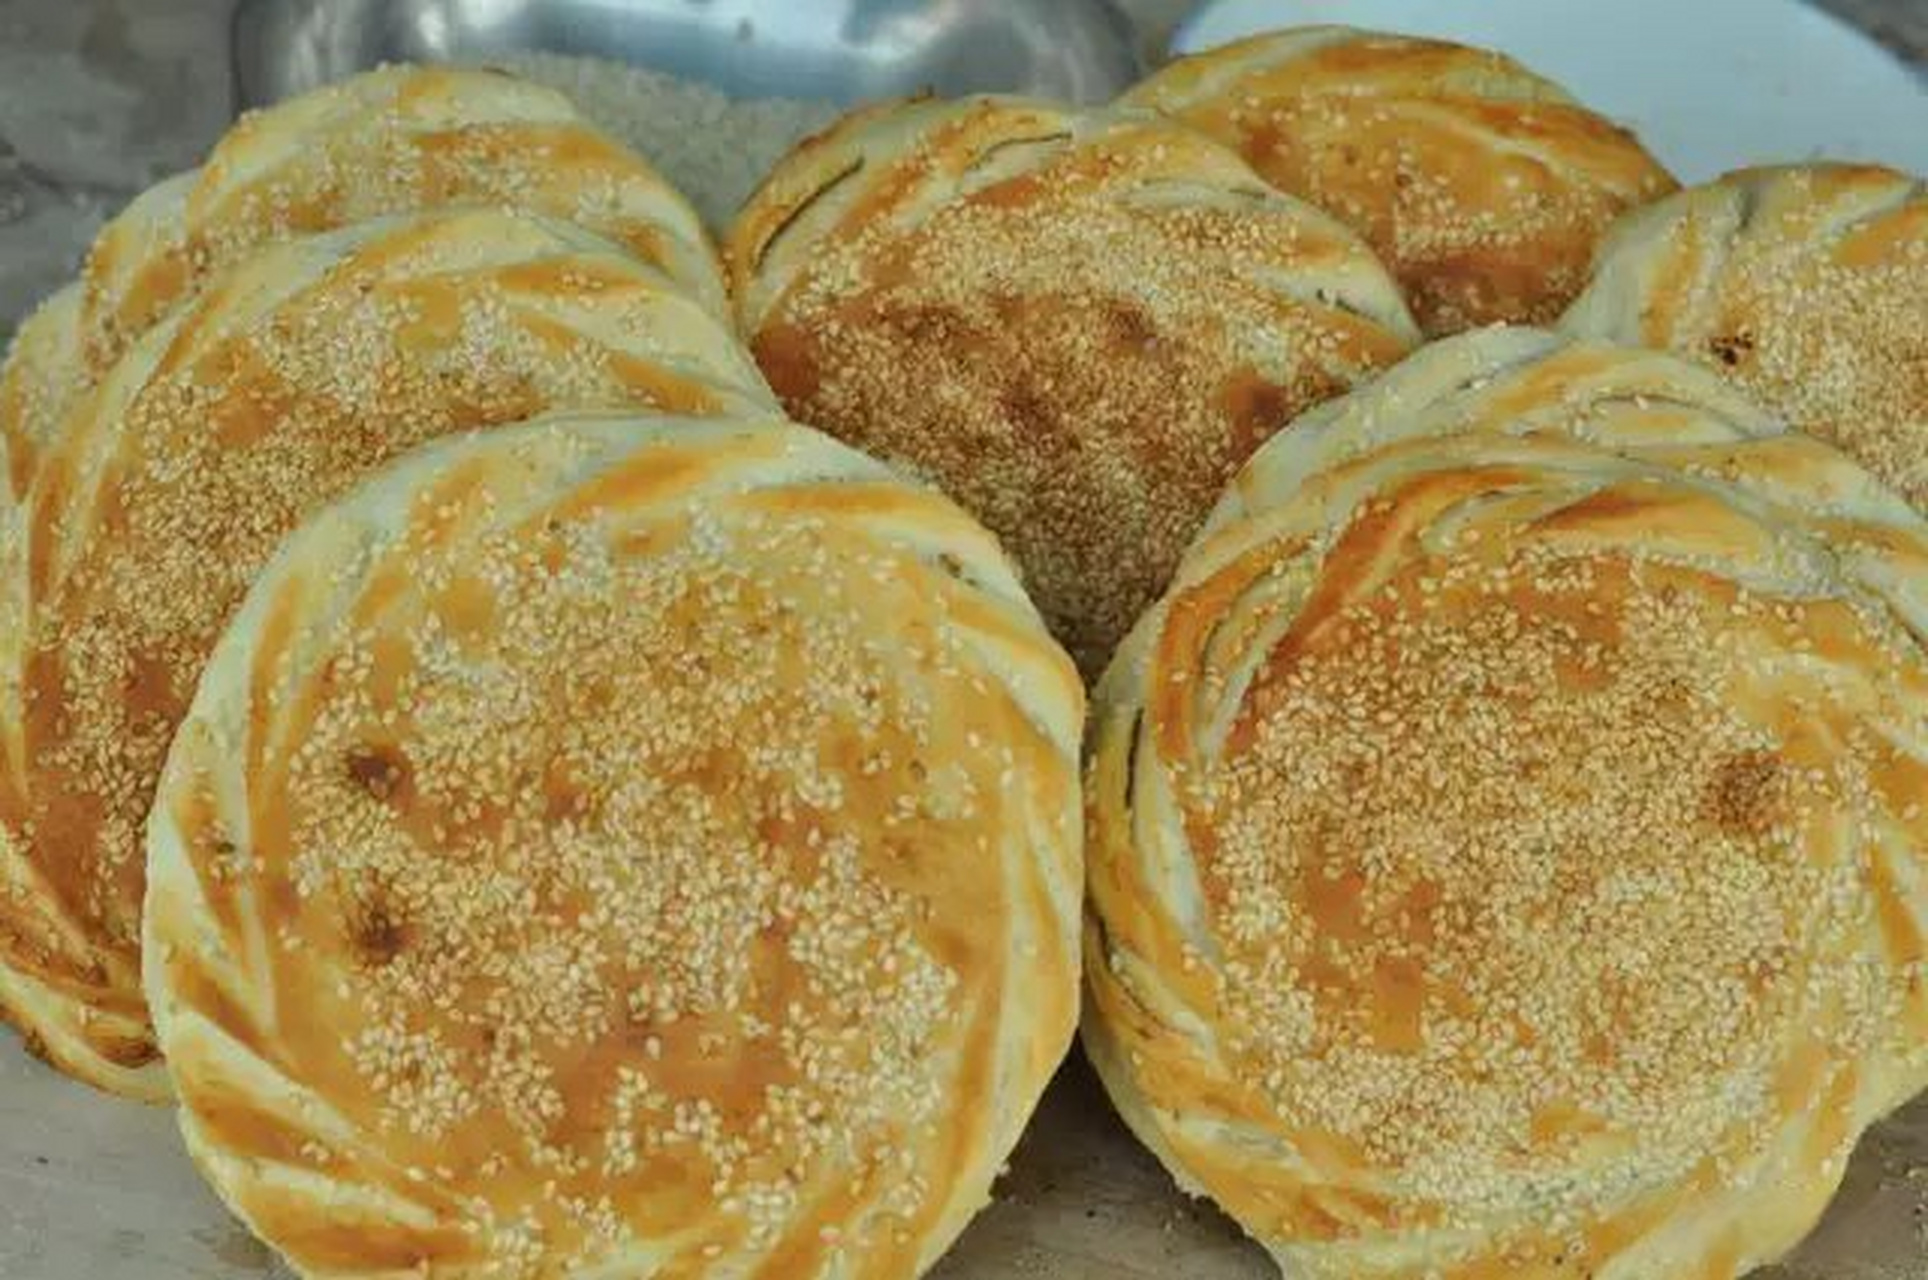 长泾烧饼是江苏江阴长泾的美食,溯其源,长泾烧饼的大致成型始于清朝